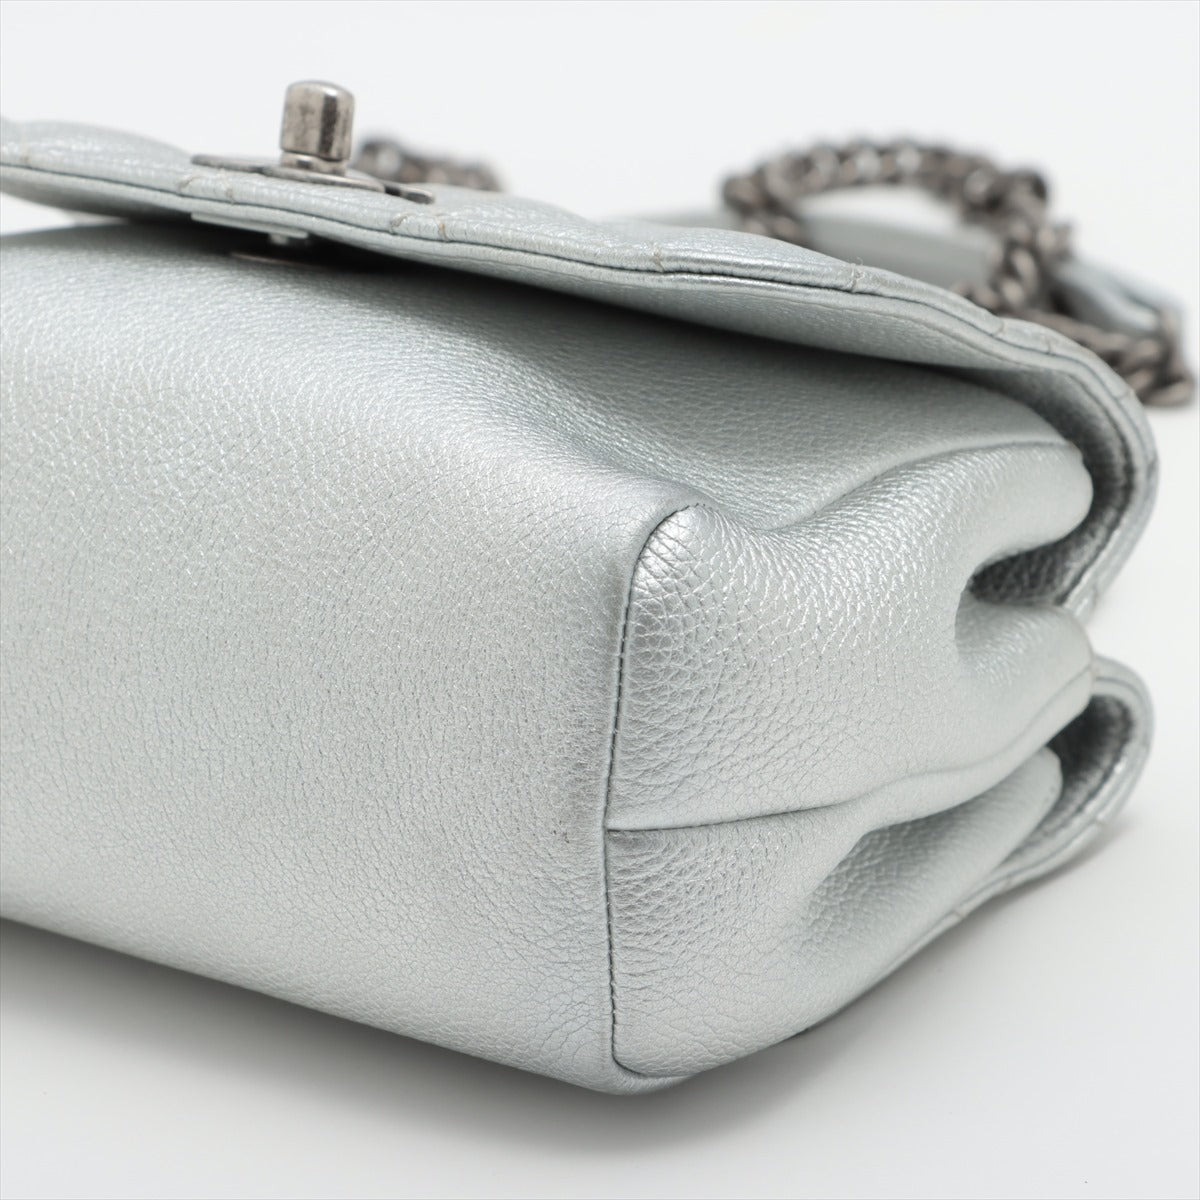 Chanel Matelasse Lambskin 2way handbag Chain shoulder Silver Gunmetallic hardware 22XXXXXX